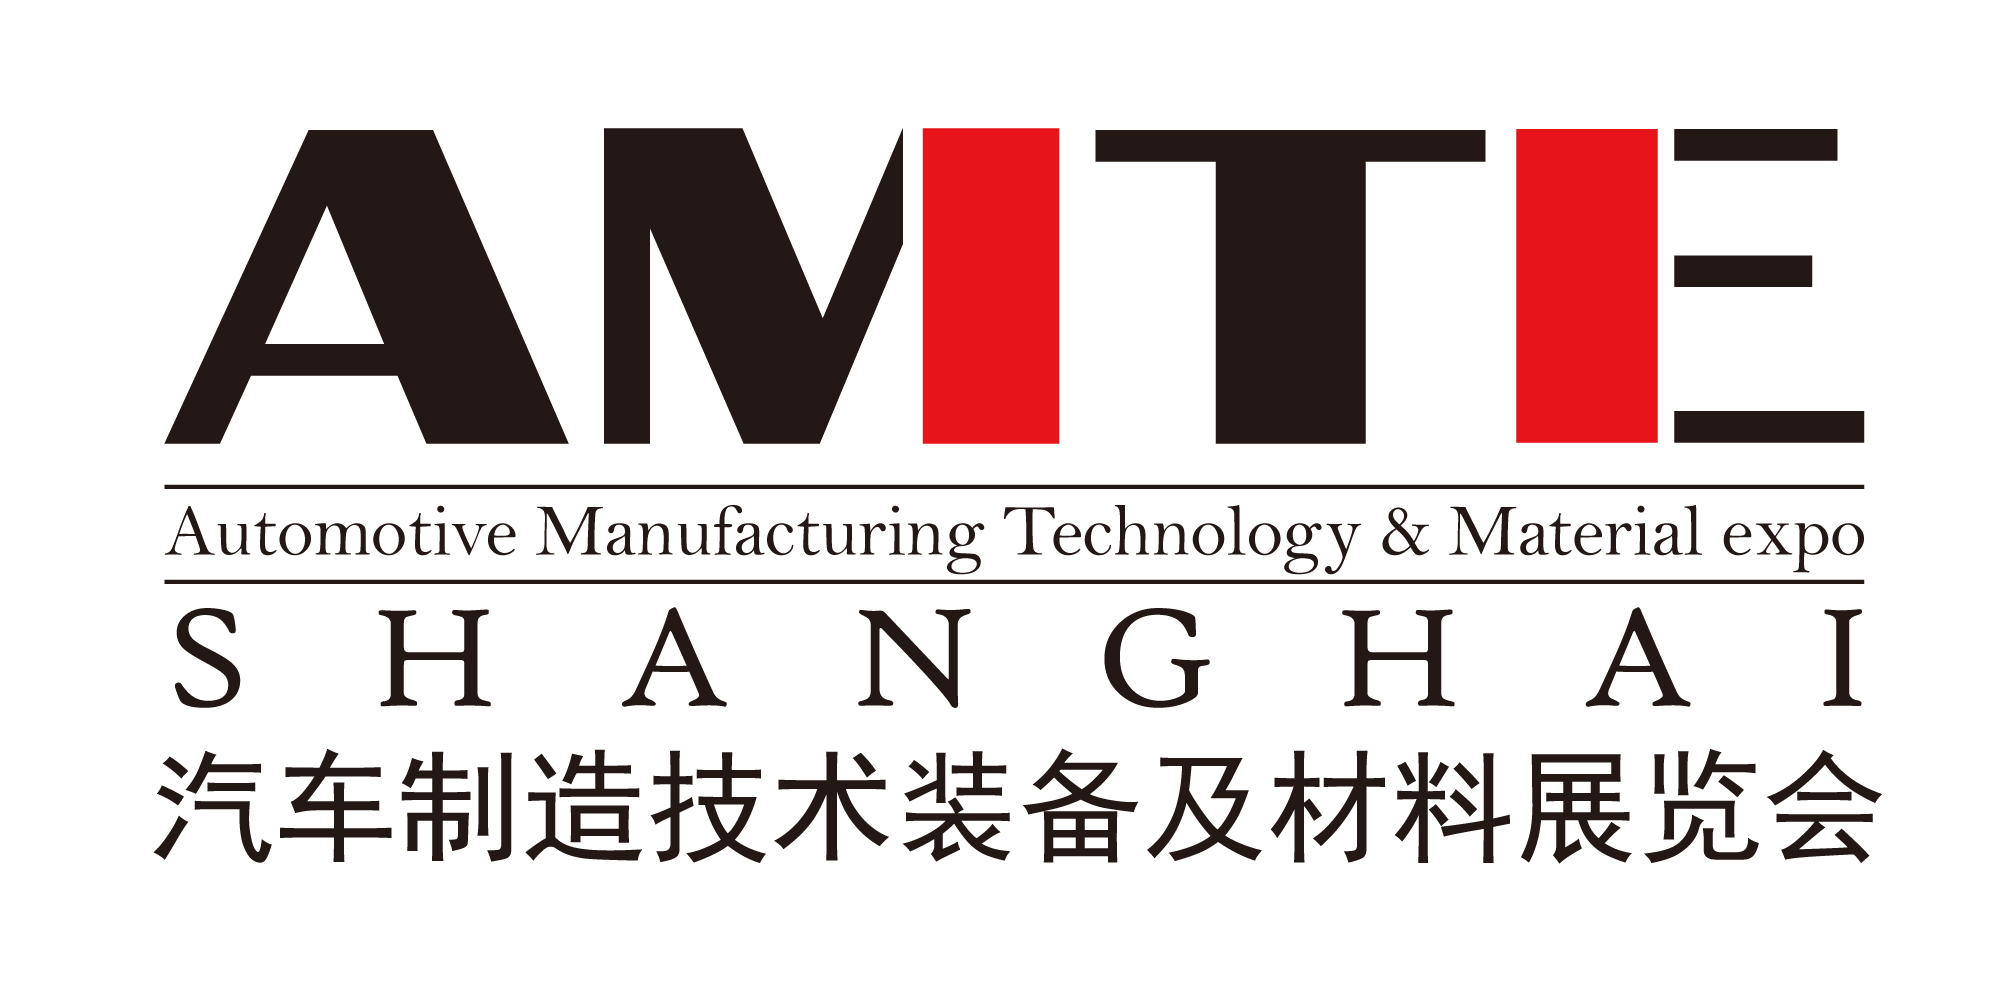 2017AMTE上海国际汽车制造技术装备及材料展览会